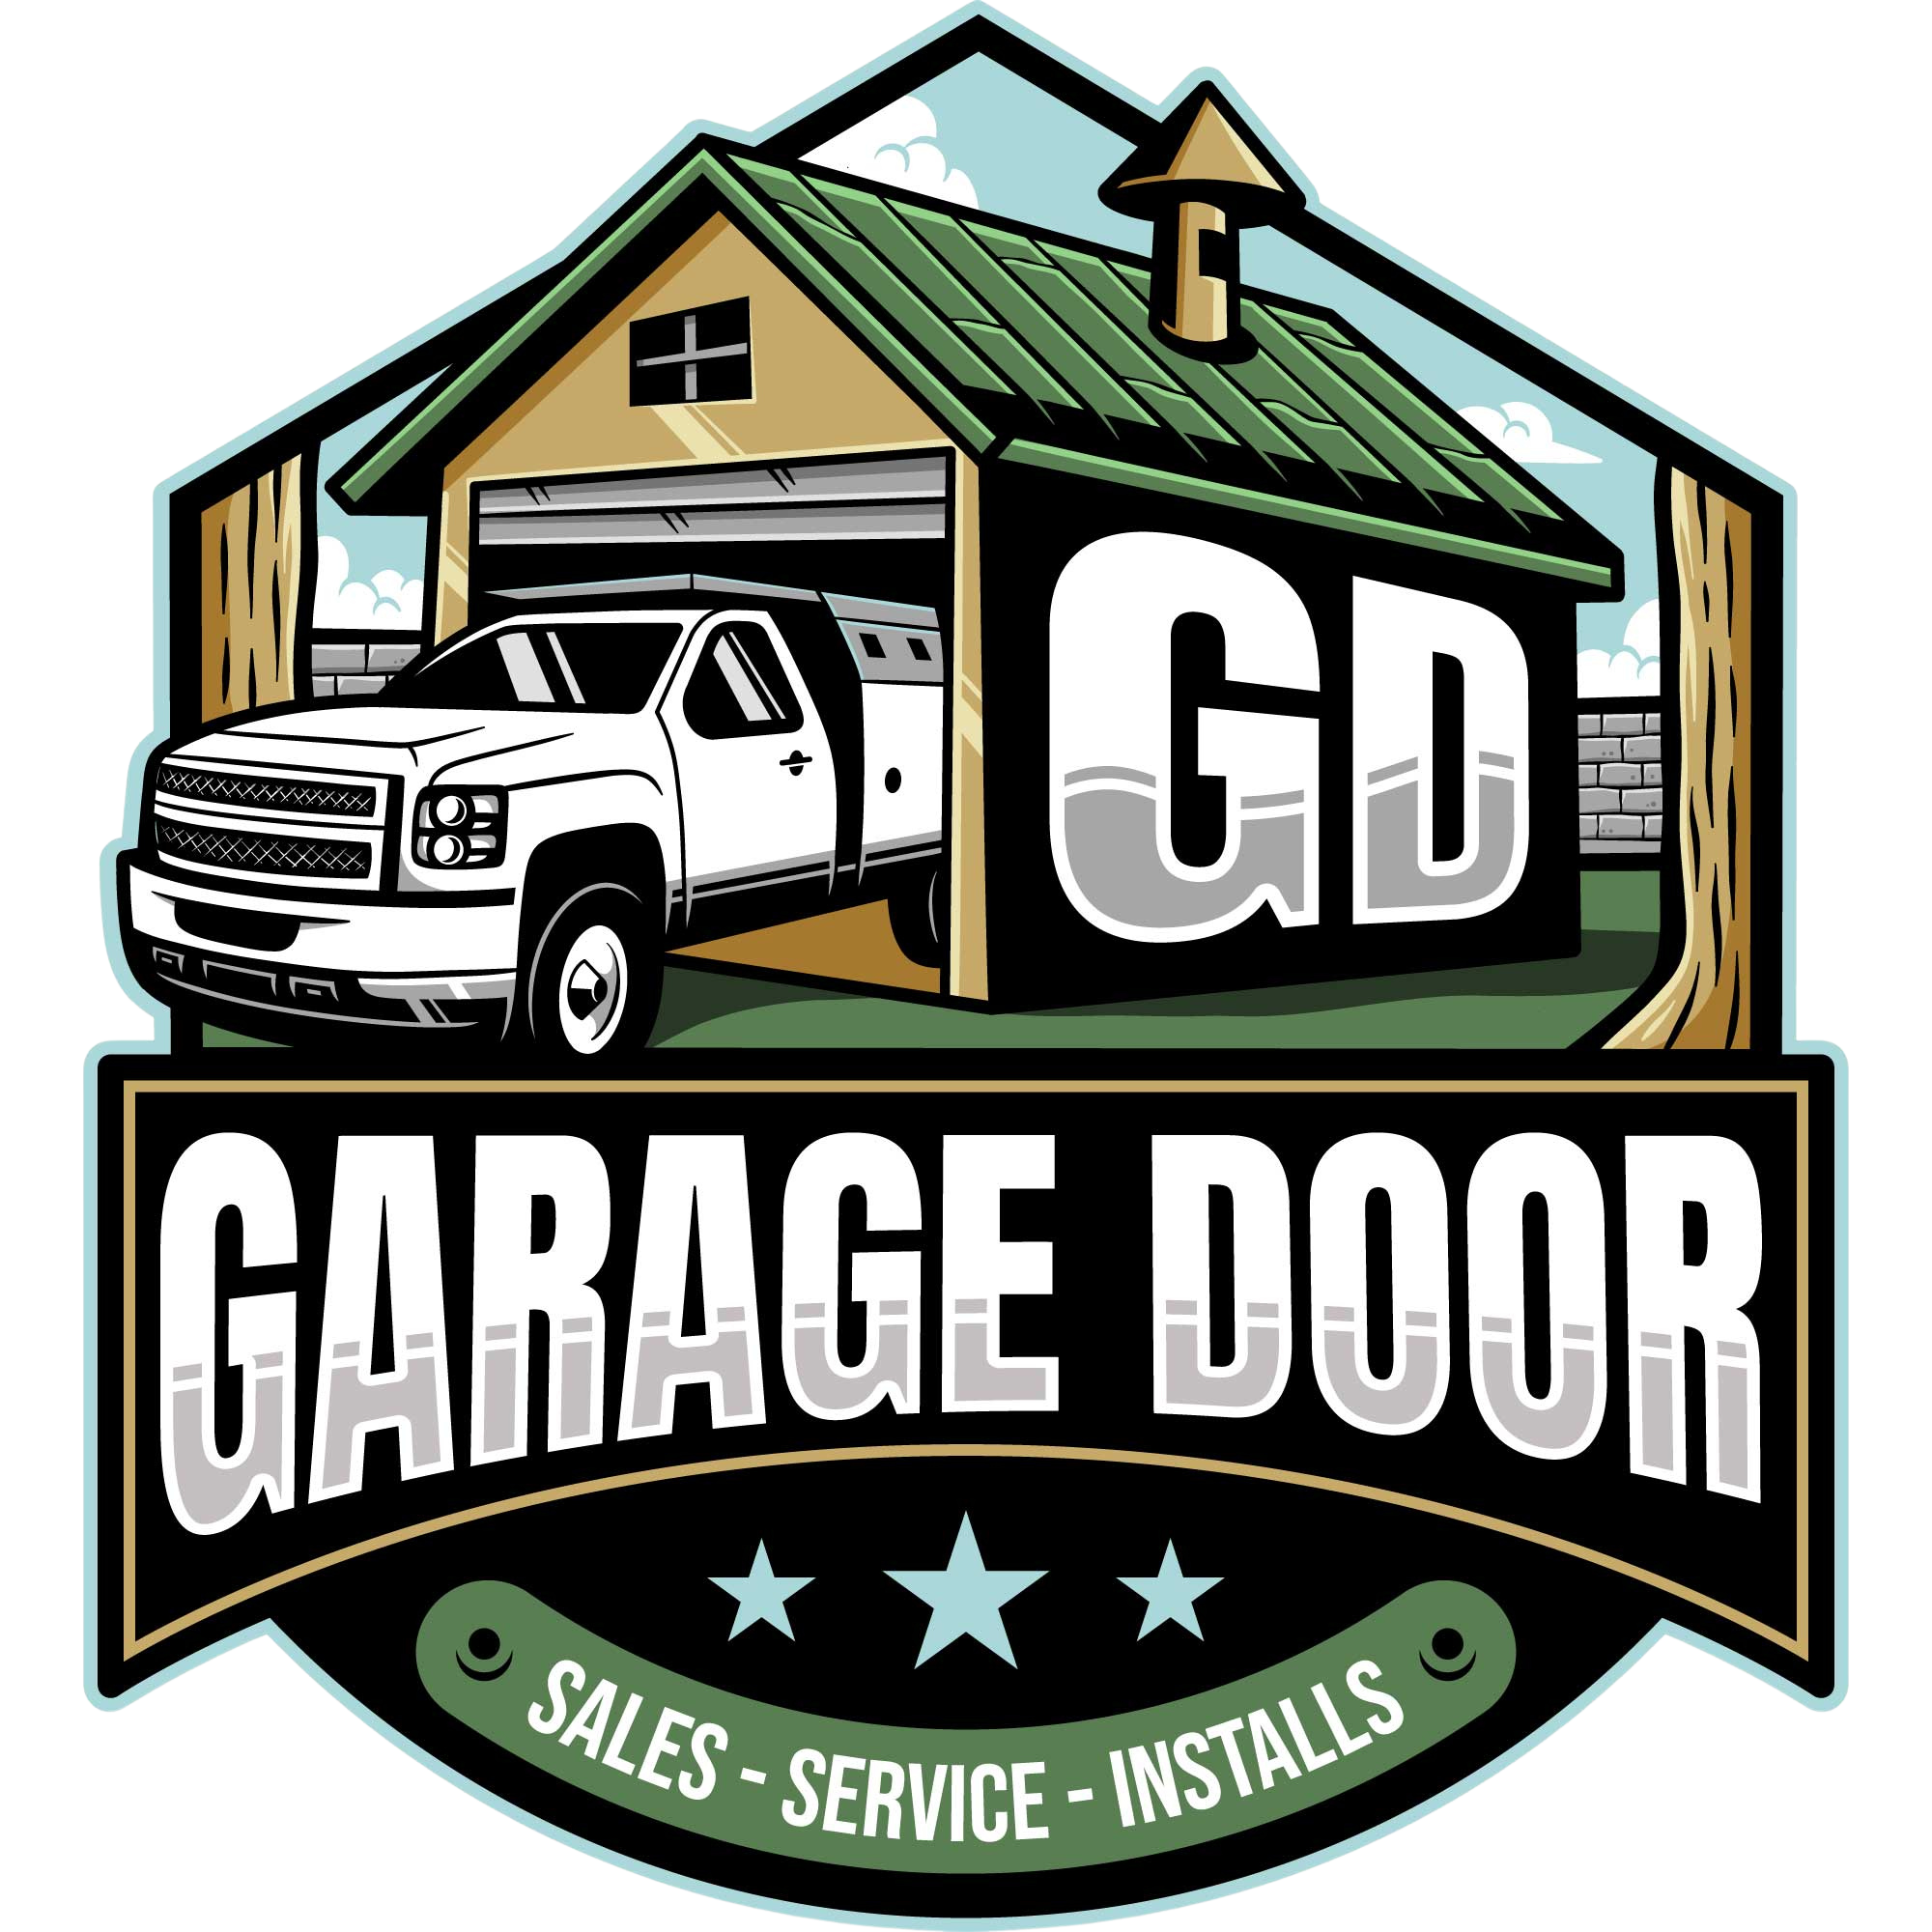 gd_garage_door